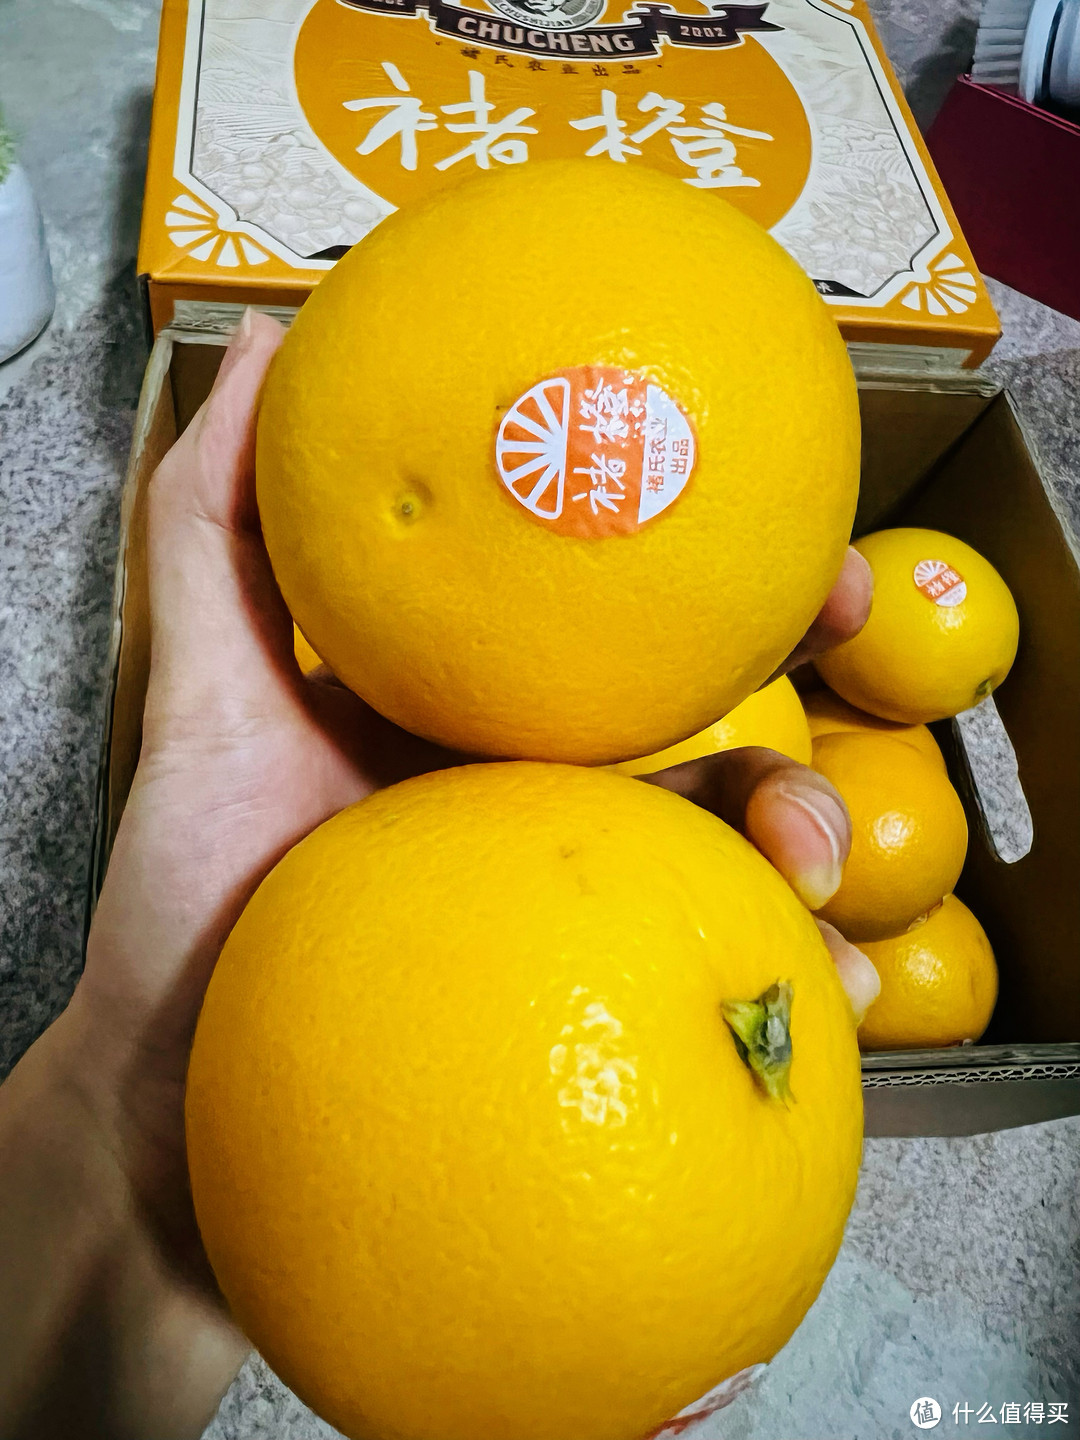 褚橙—吃褚橙的第5个年头，并没有5年之痒，反而宠爱有加，轻咬一口香甜的果粒在嘴里爆开的褚橙你爱了吗？